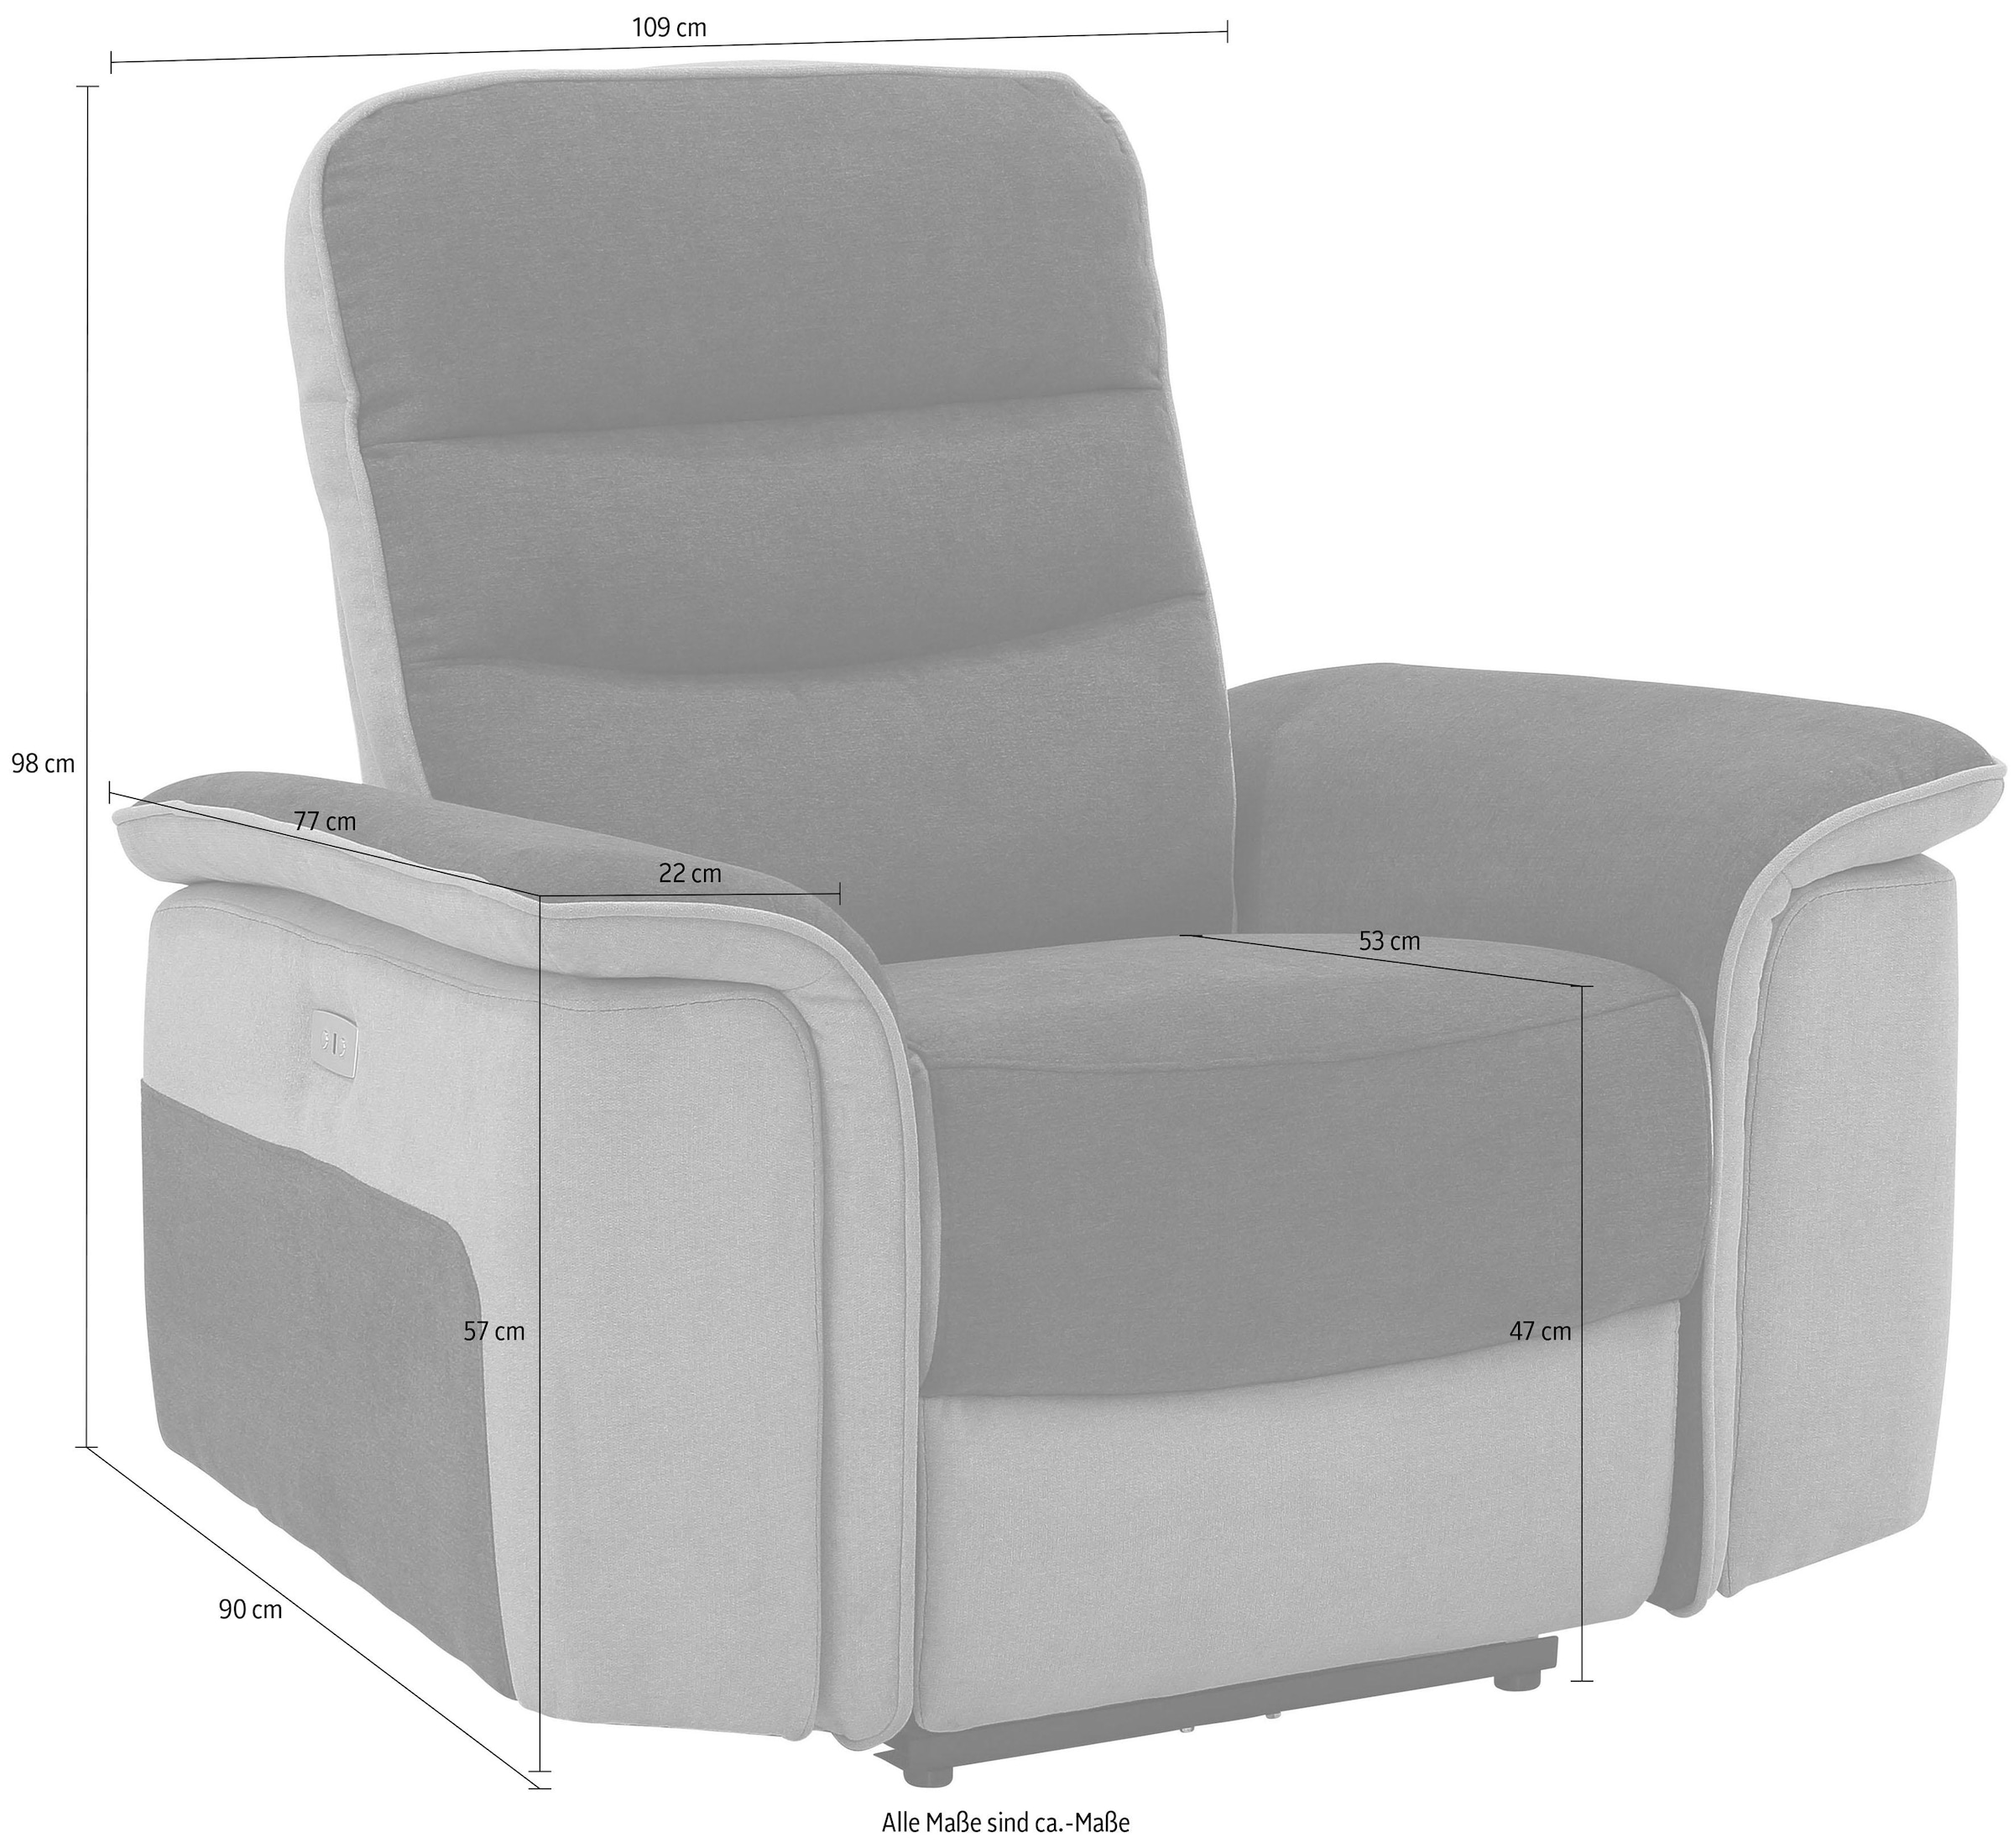 Home affaire Relaxsessel »Maldini, TV-Sessel«, mit elektrischer Relaxfunktion und USB-Steckeranschluss, Breite 109 cm